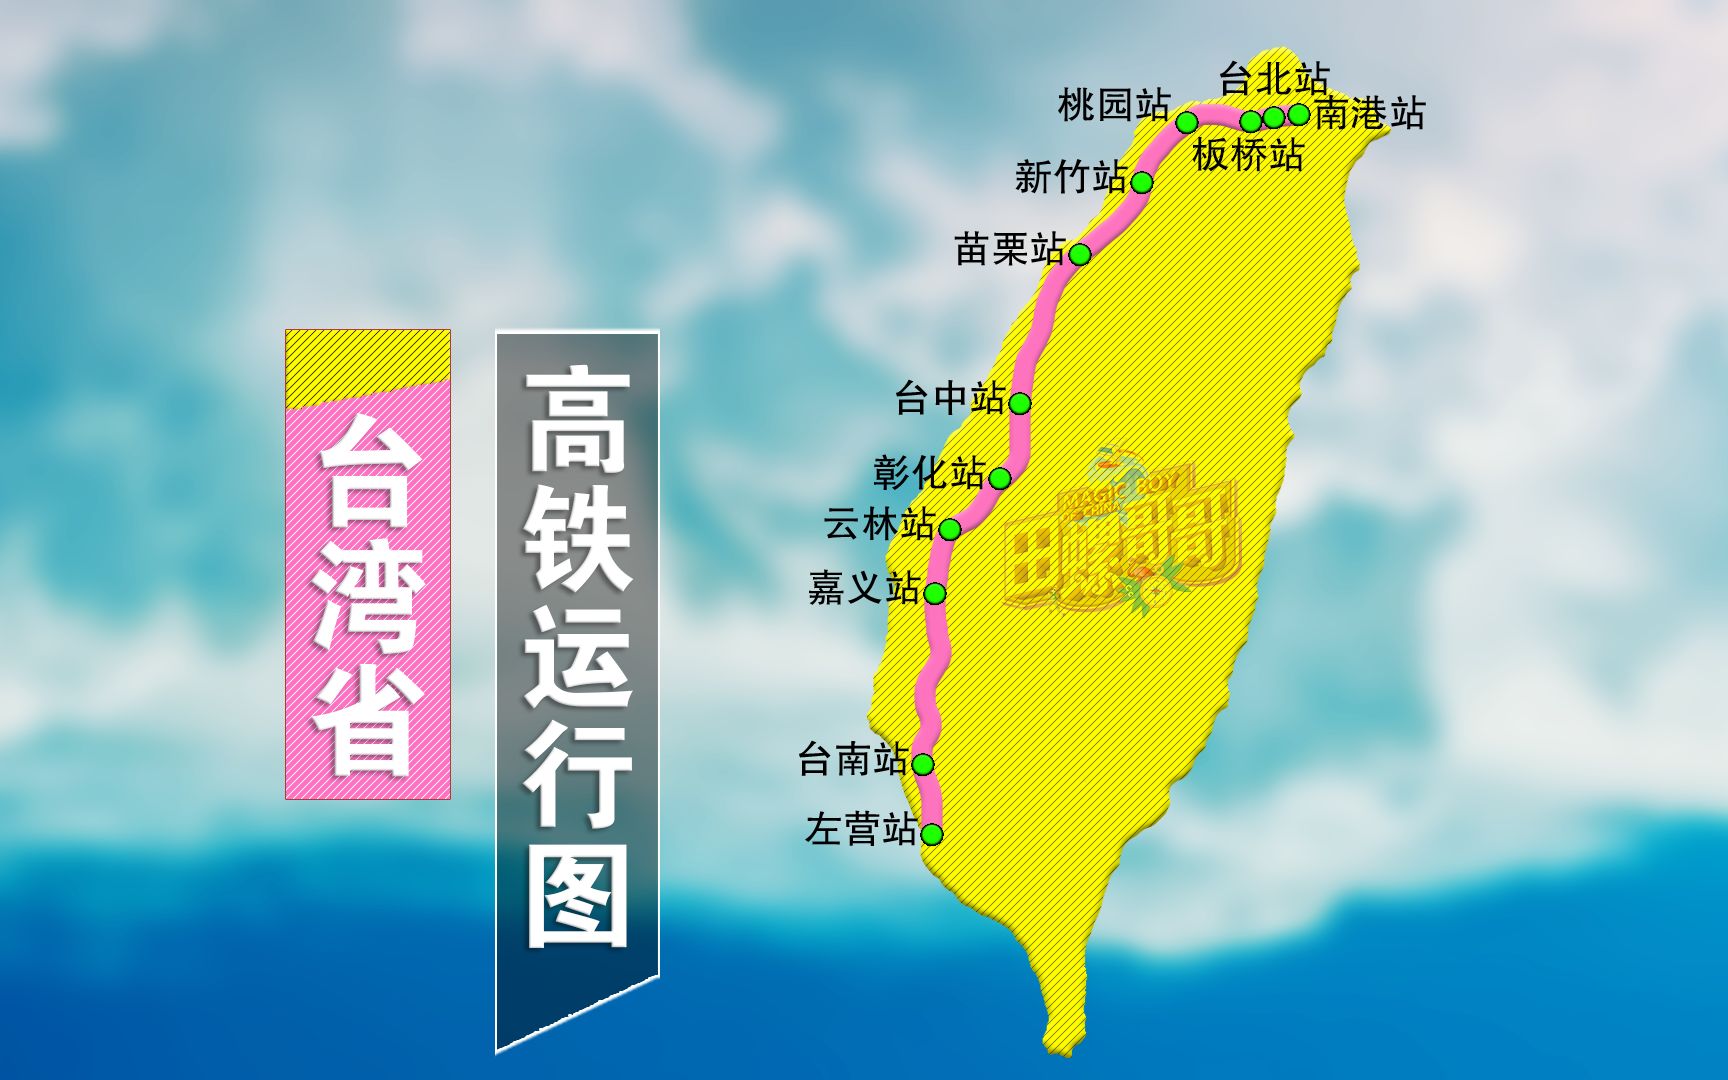 台湾高铁规划图图片